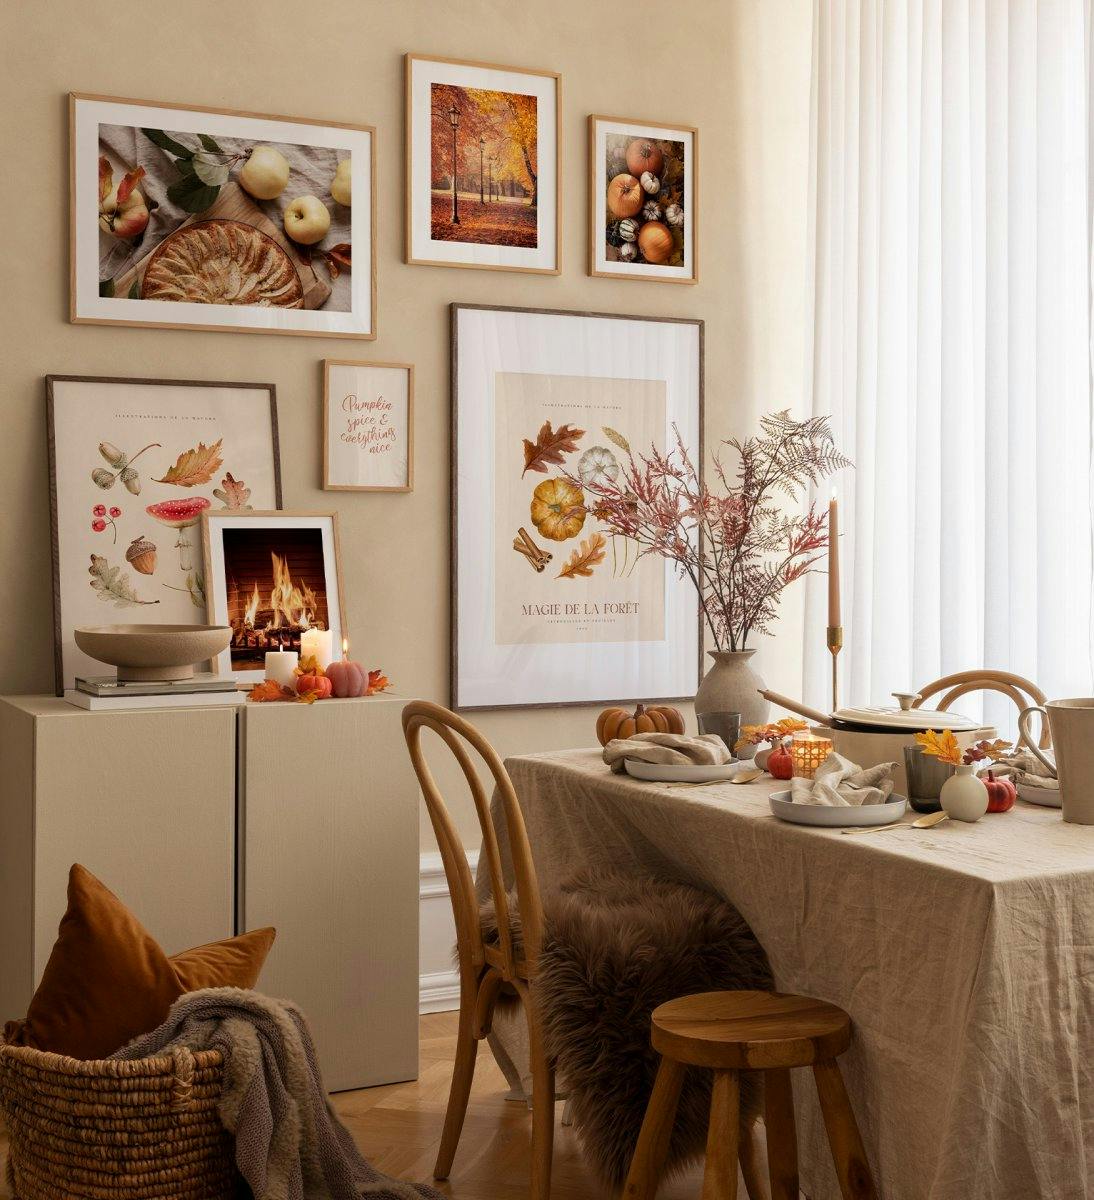 Proměňte svůj obývácí pokoj v útulný prostor s touto nástěnnou galerií, nádherně vystavenou v dubových rámech!